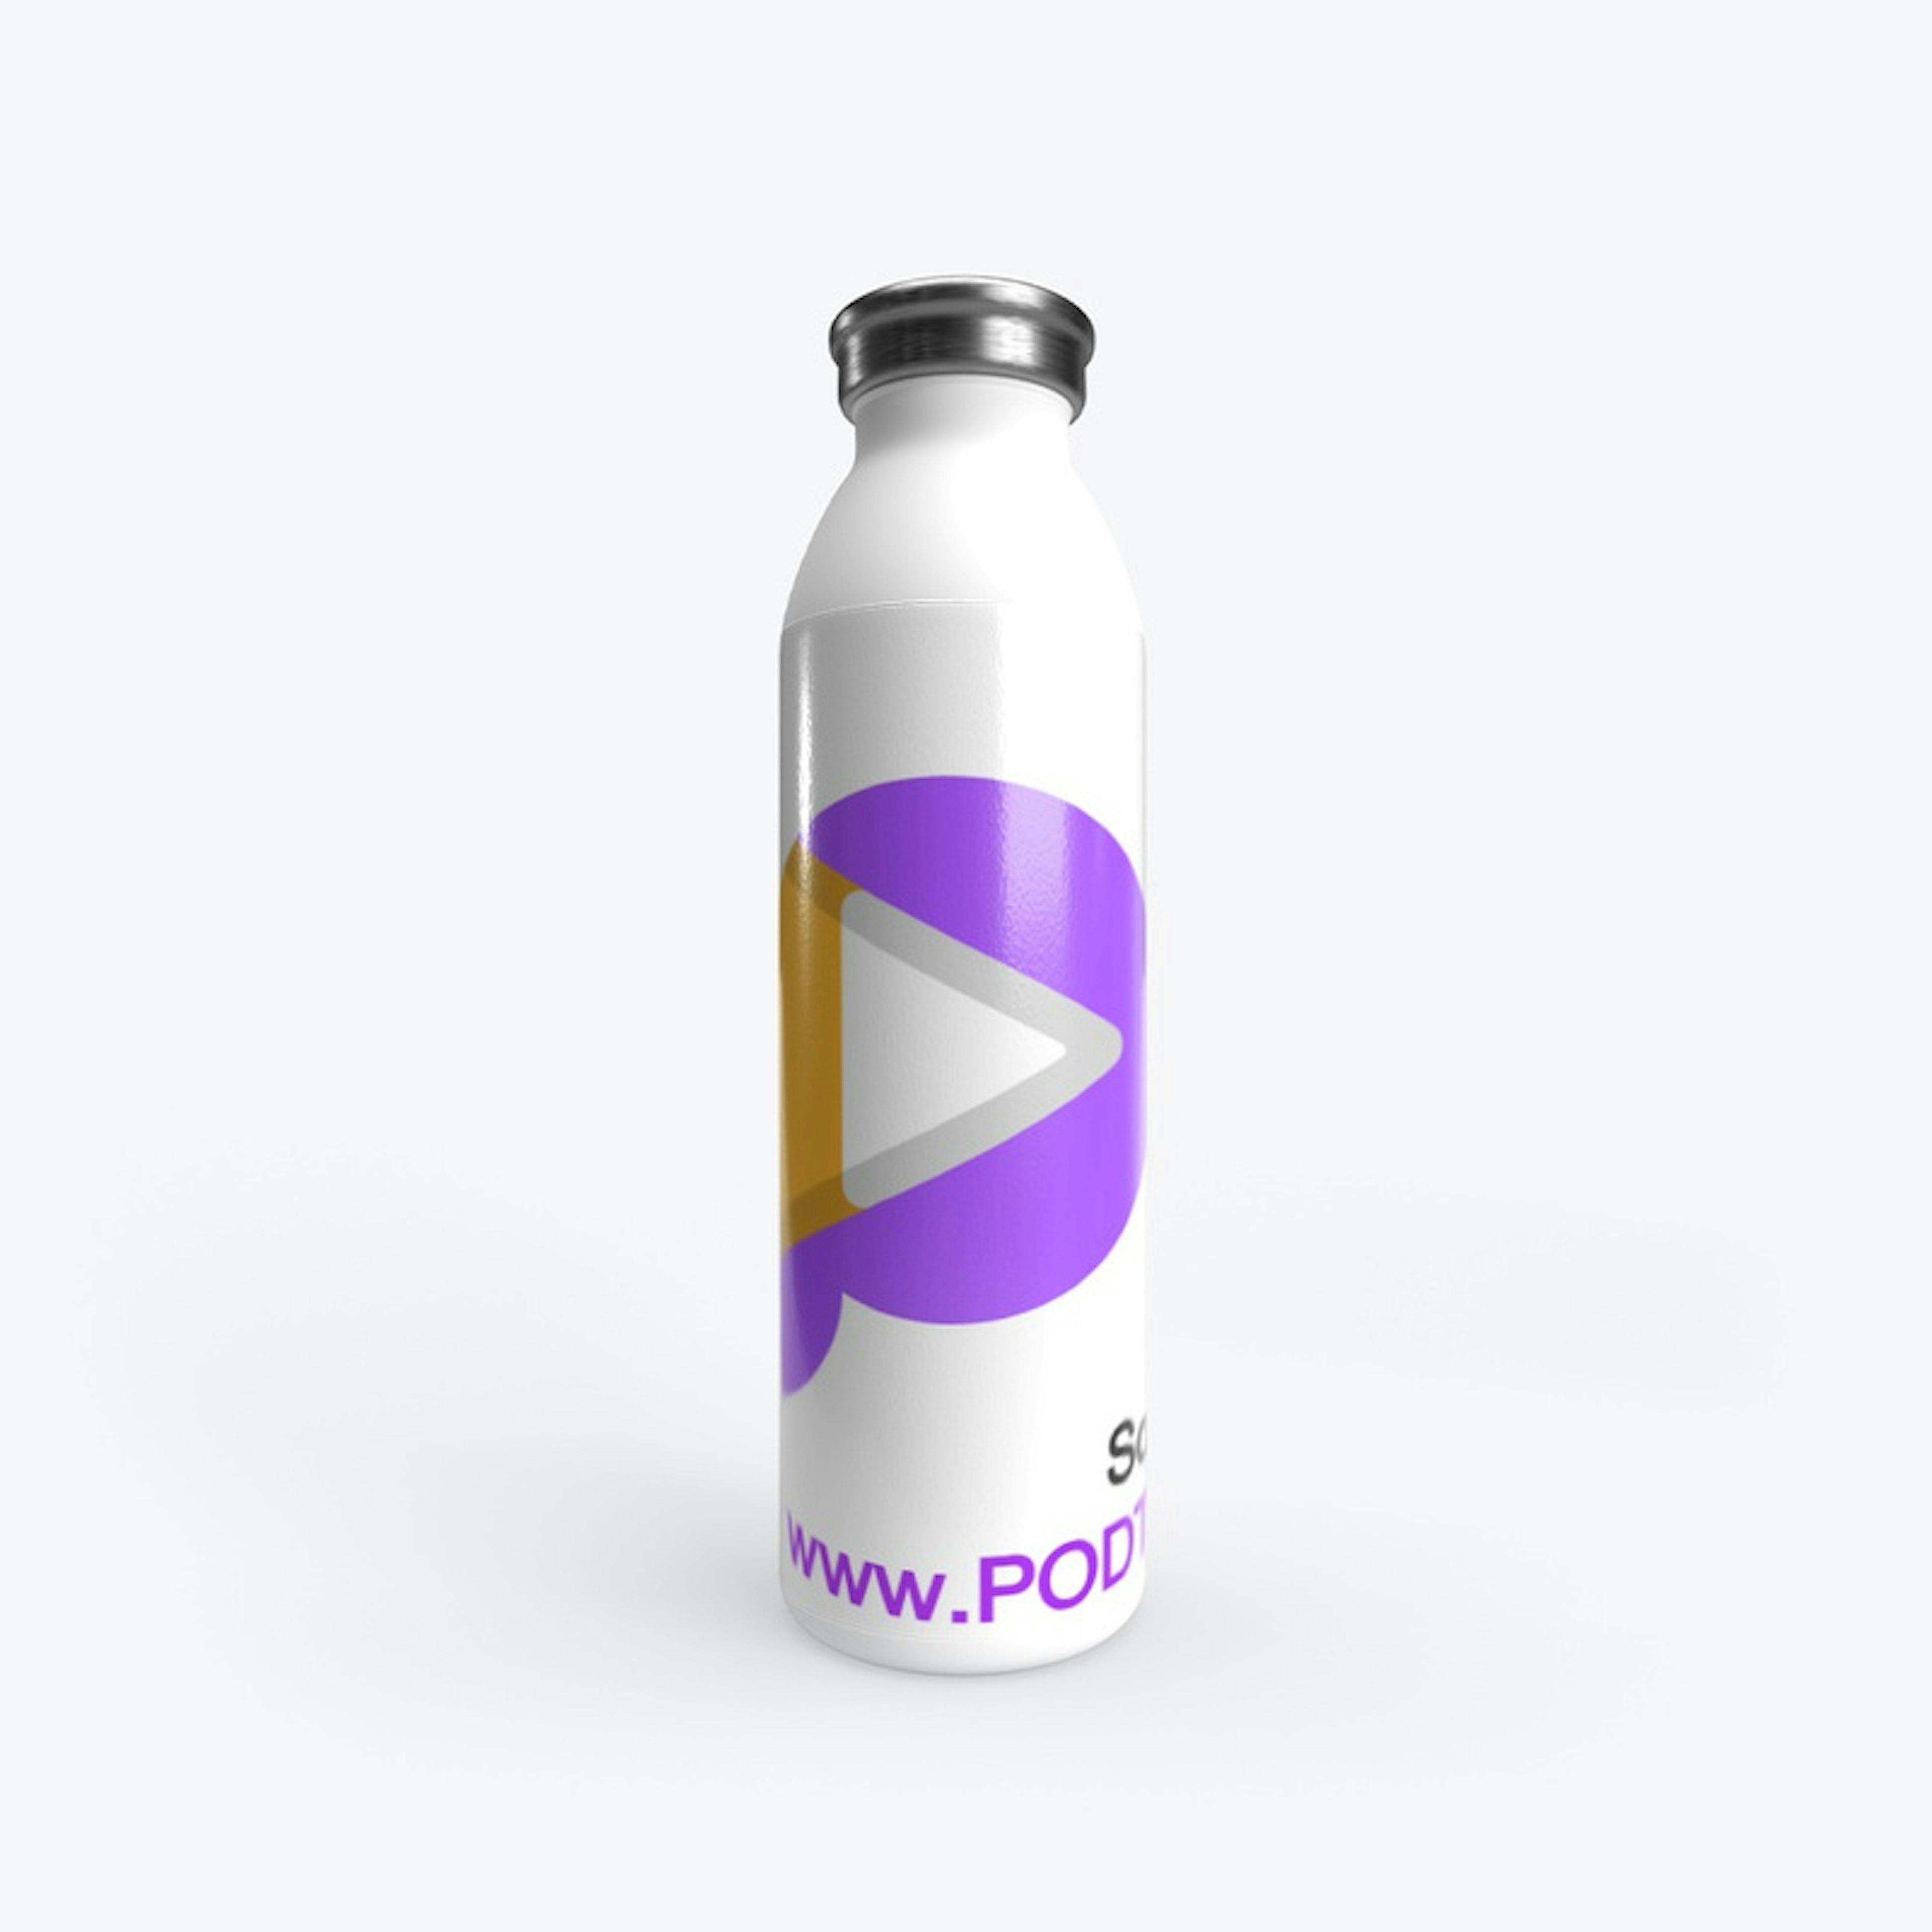 PODTV Social Media Water Bottle 